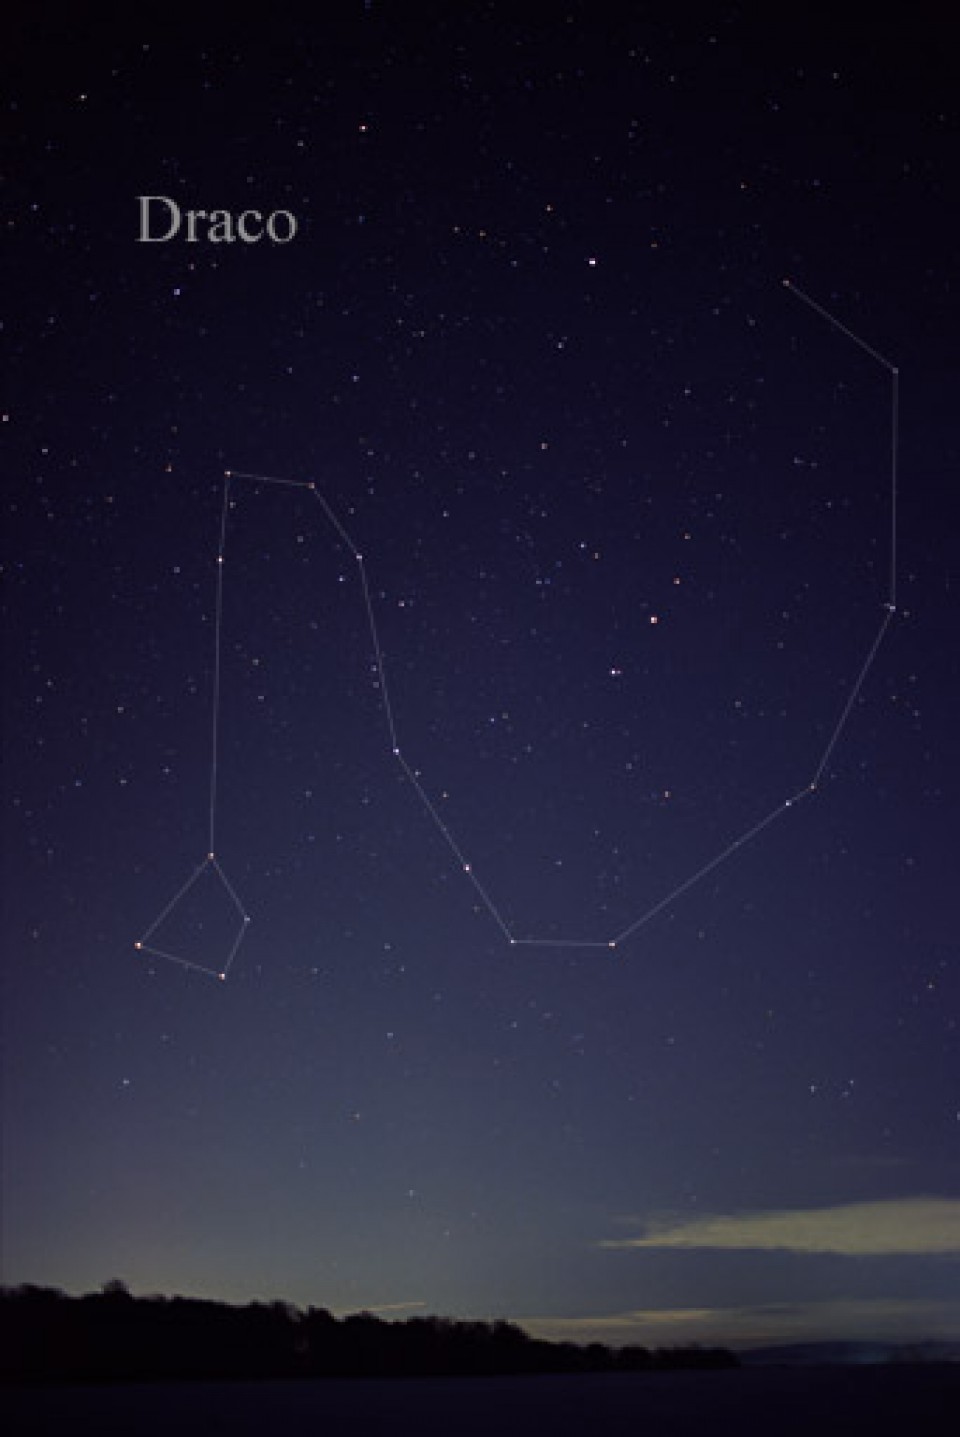 El Edasich iota Draconis B se encuentra en la constelación Draco.